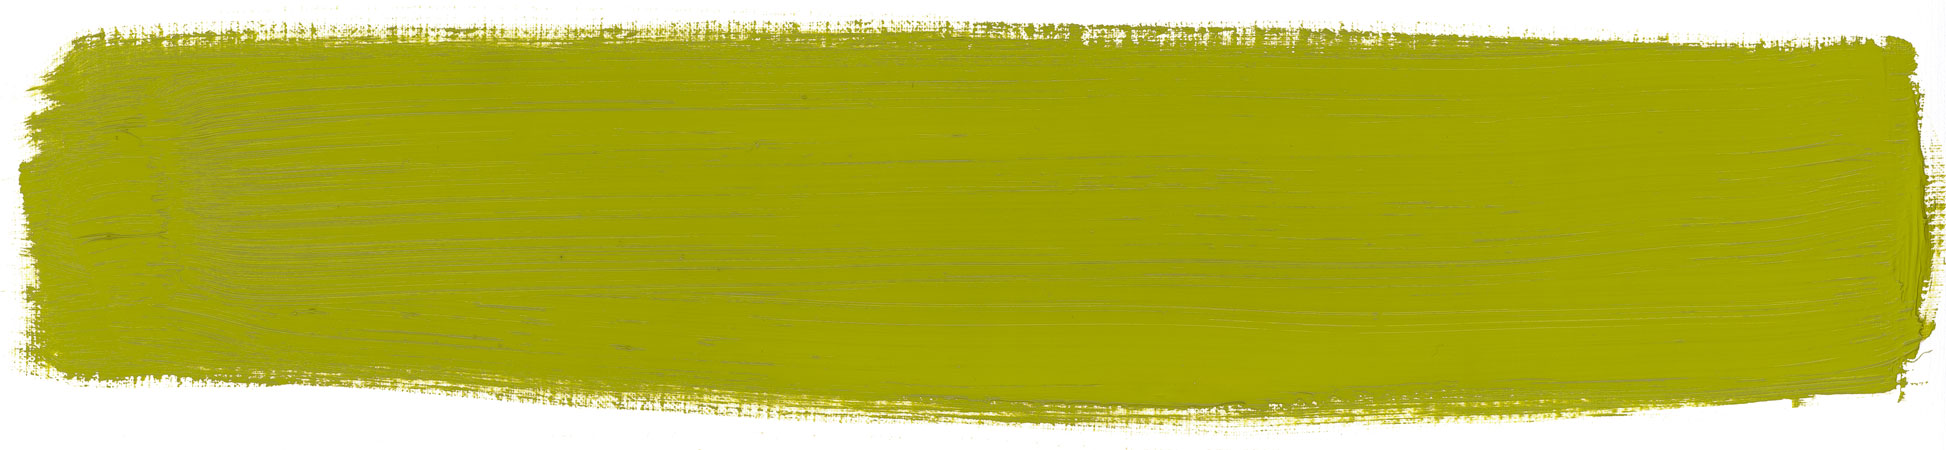 yellowish green